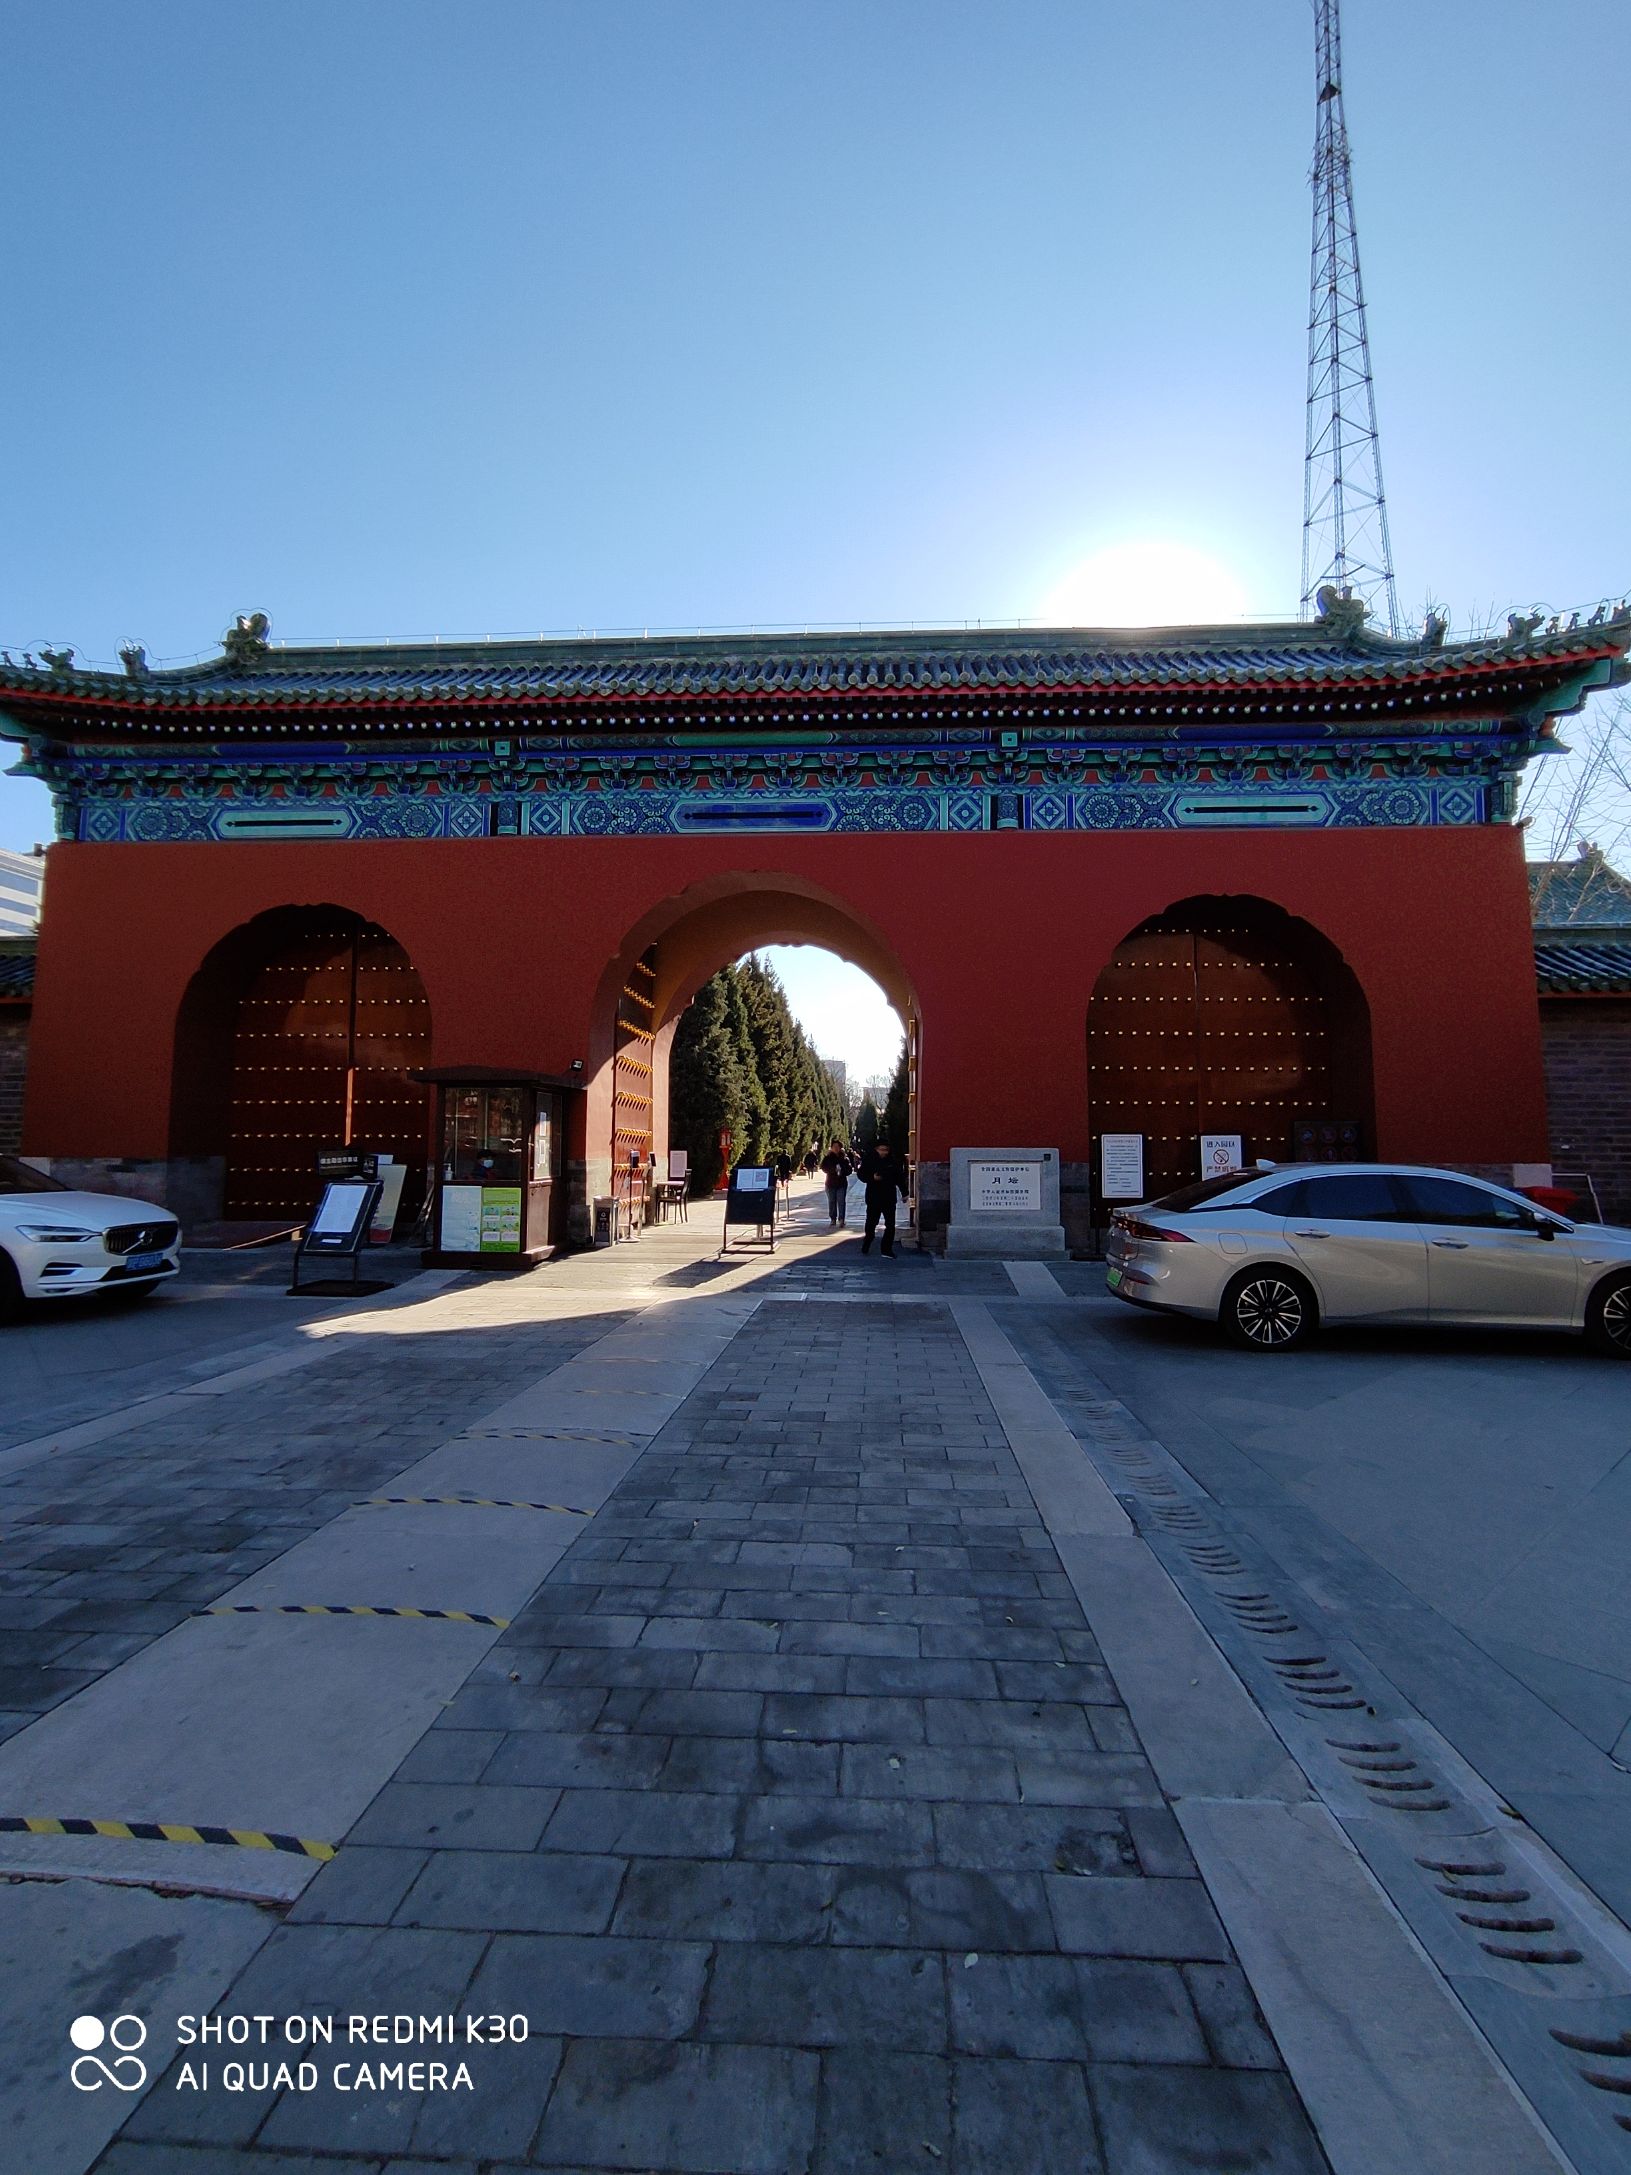 【携程攻略】北京月坛公园适合商务旅行旅游吗,月坛公园商务旅行景点